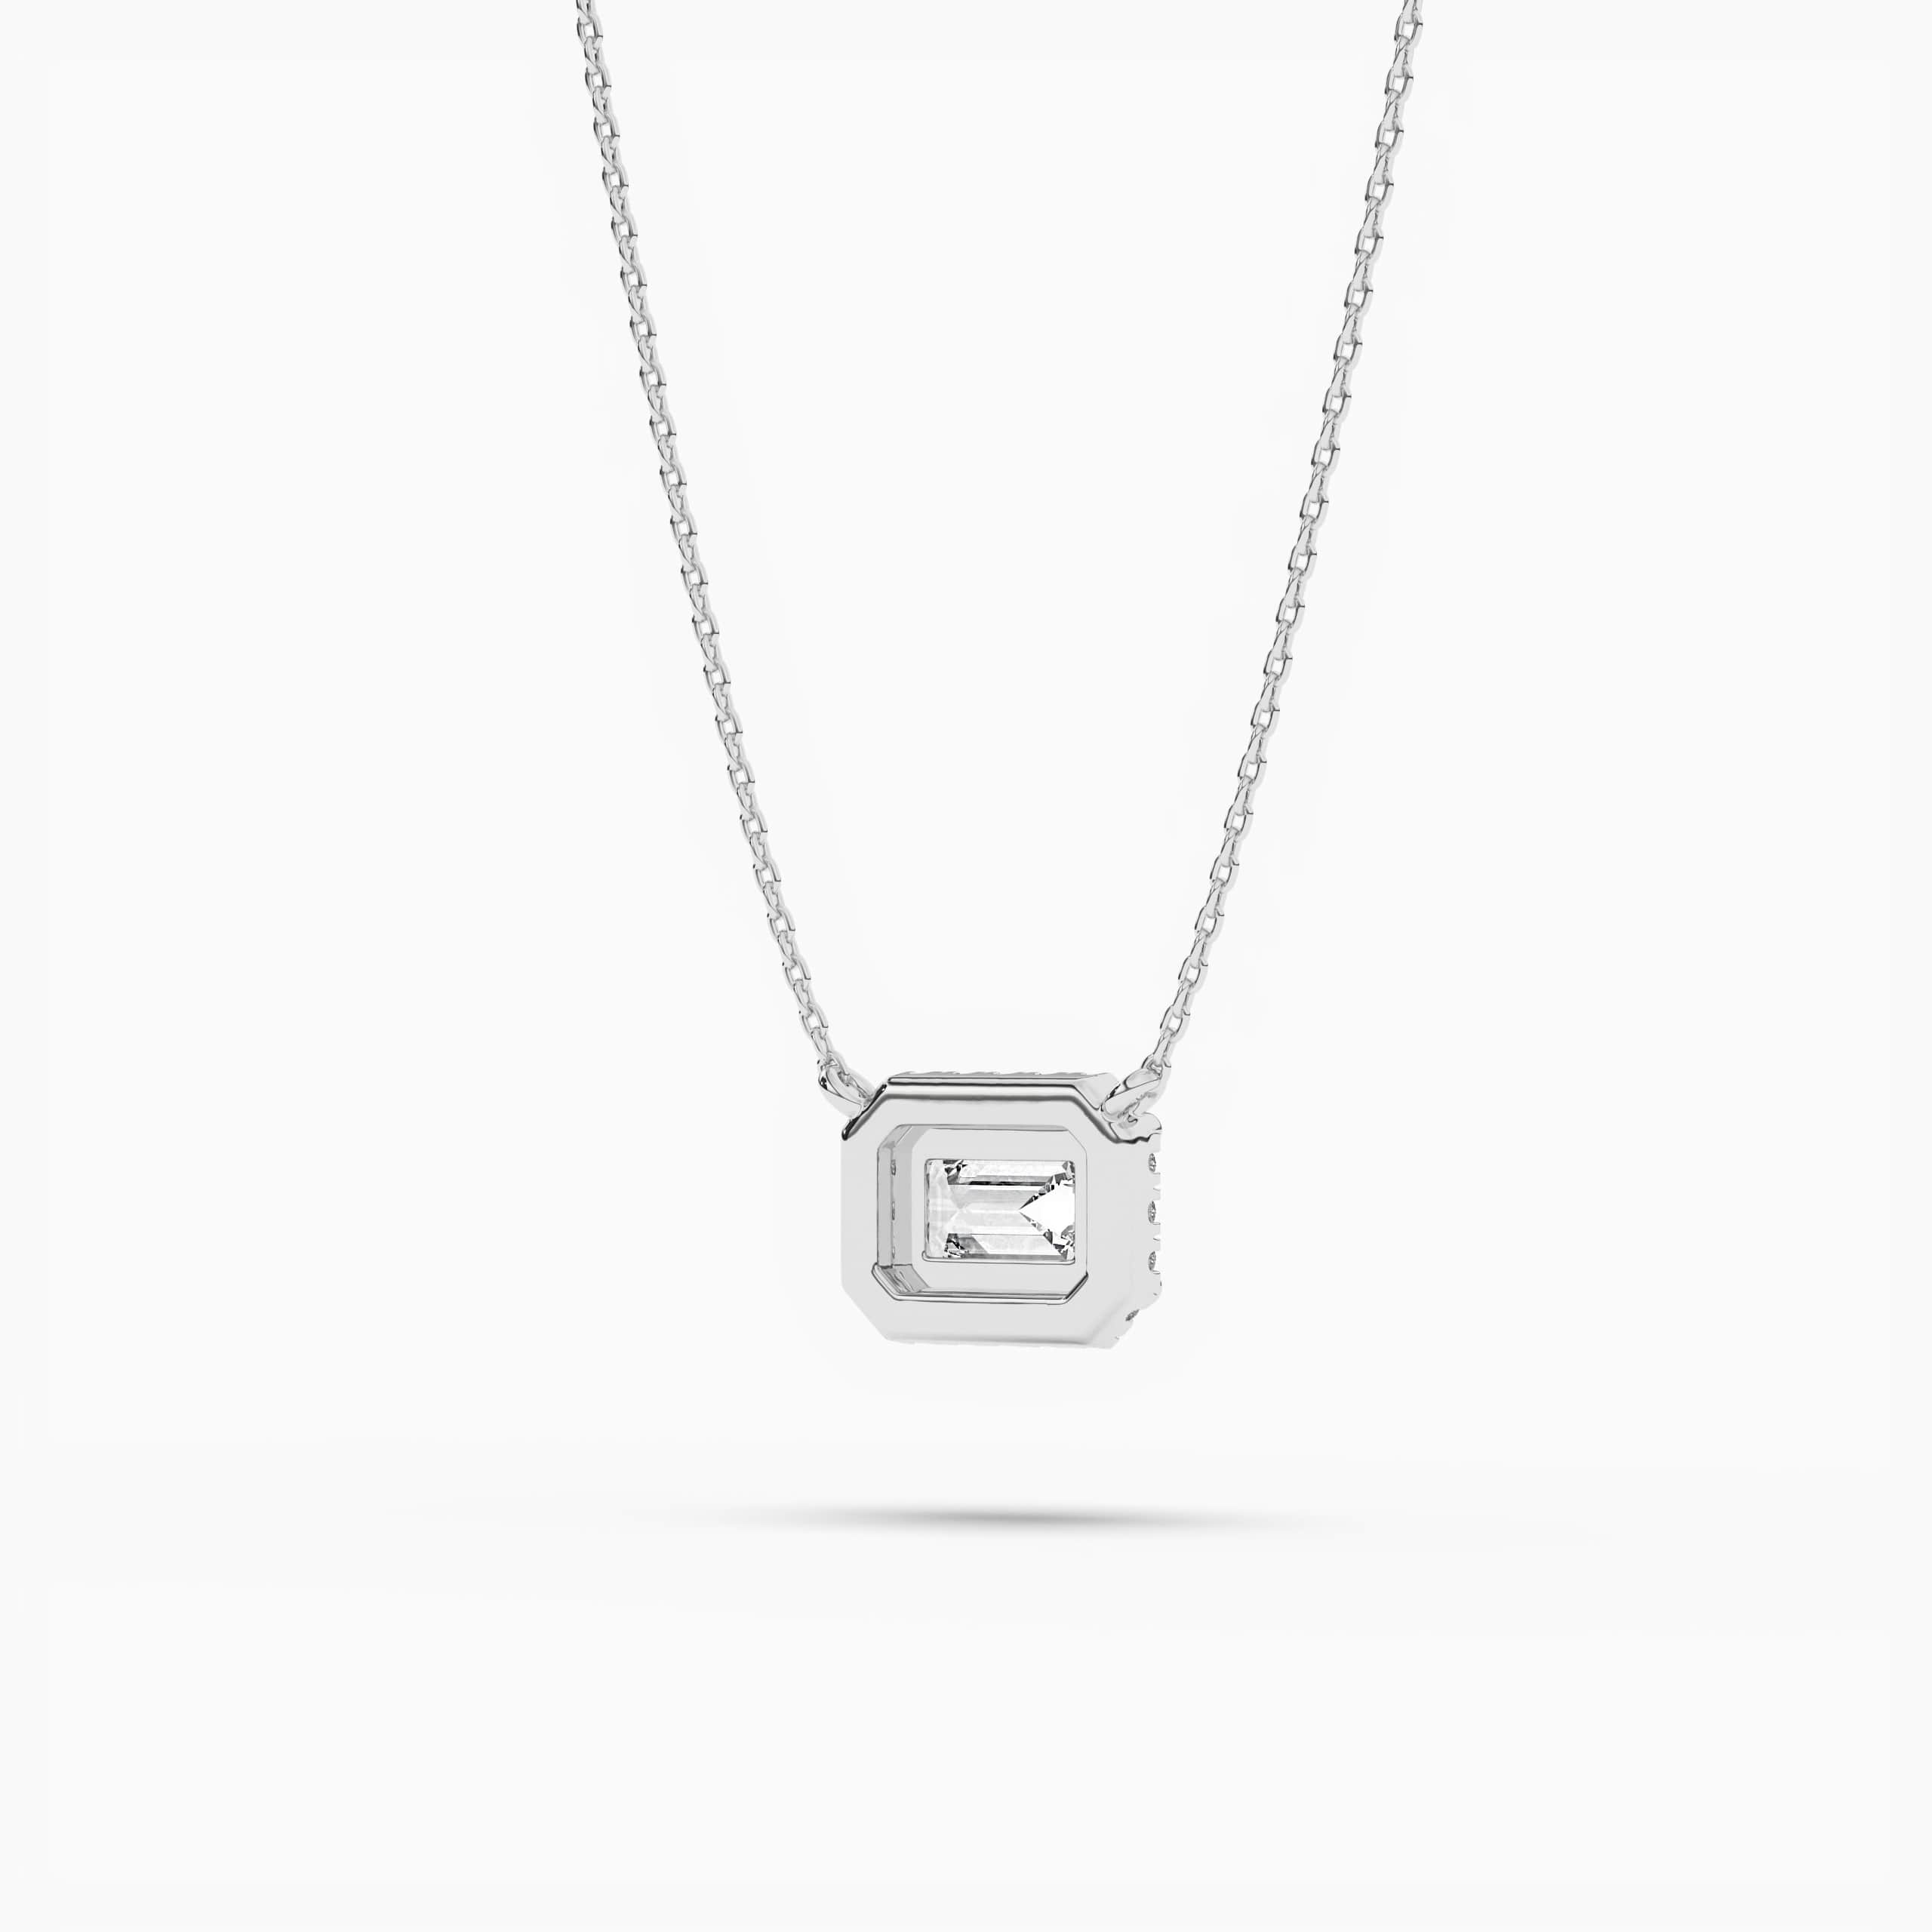 Emerald Cut East-West Diamond Pendant Necklace